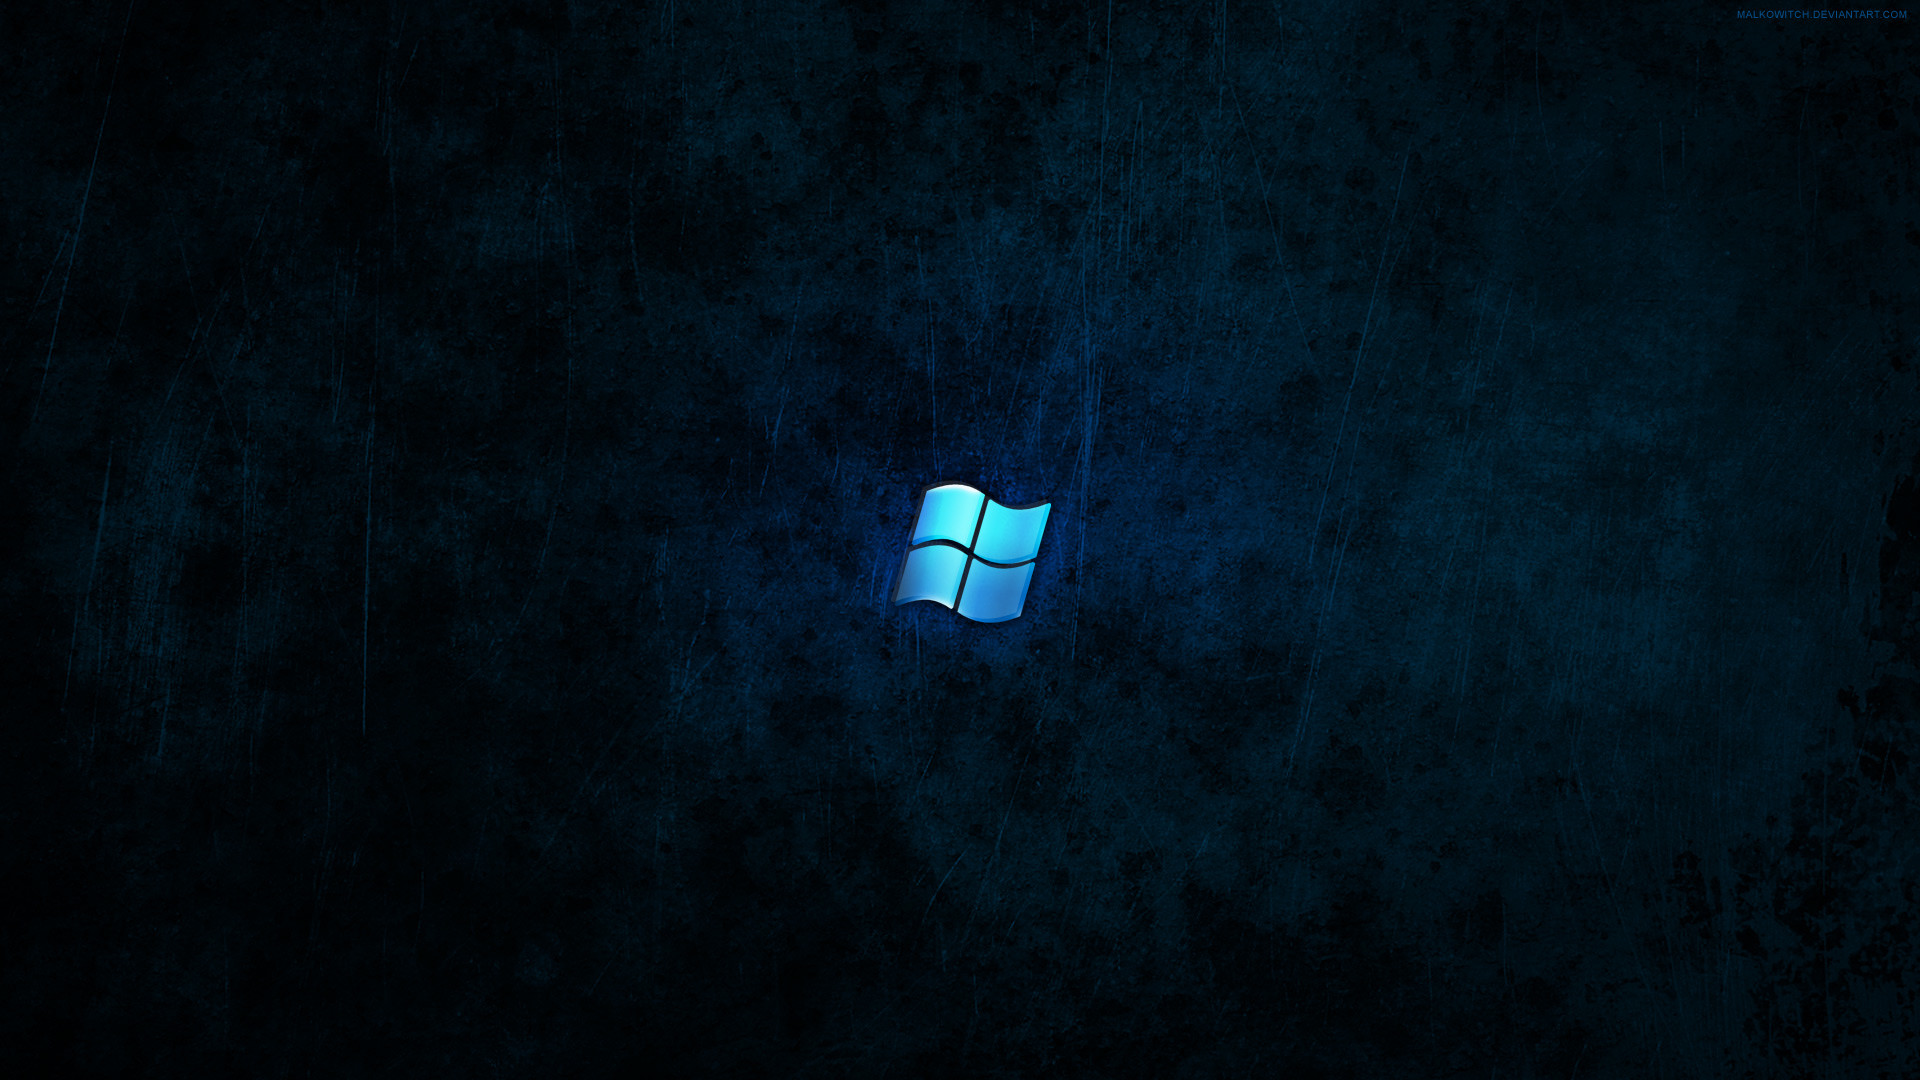 1920x1080 Windows Dark Blue Wallpaper by malkowitch on DeviantArt